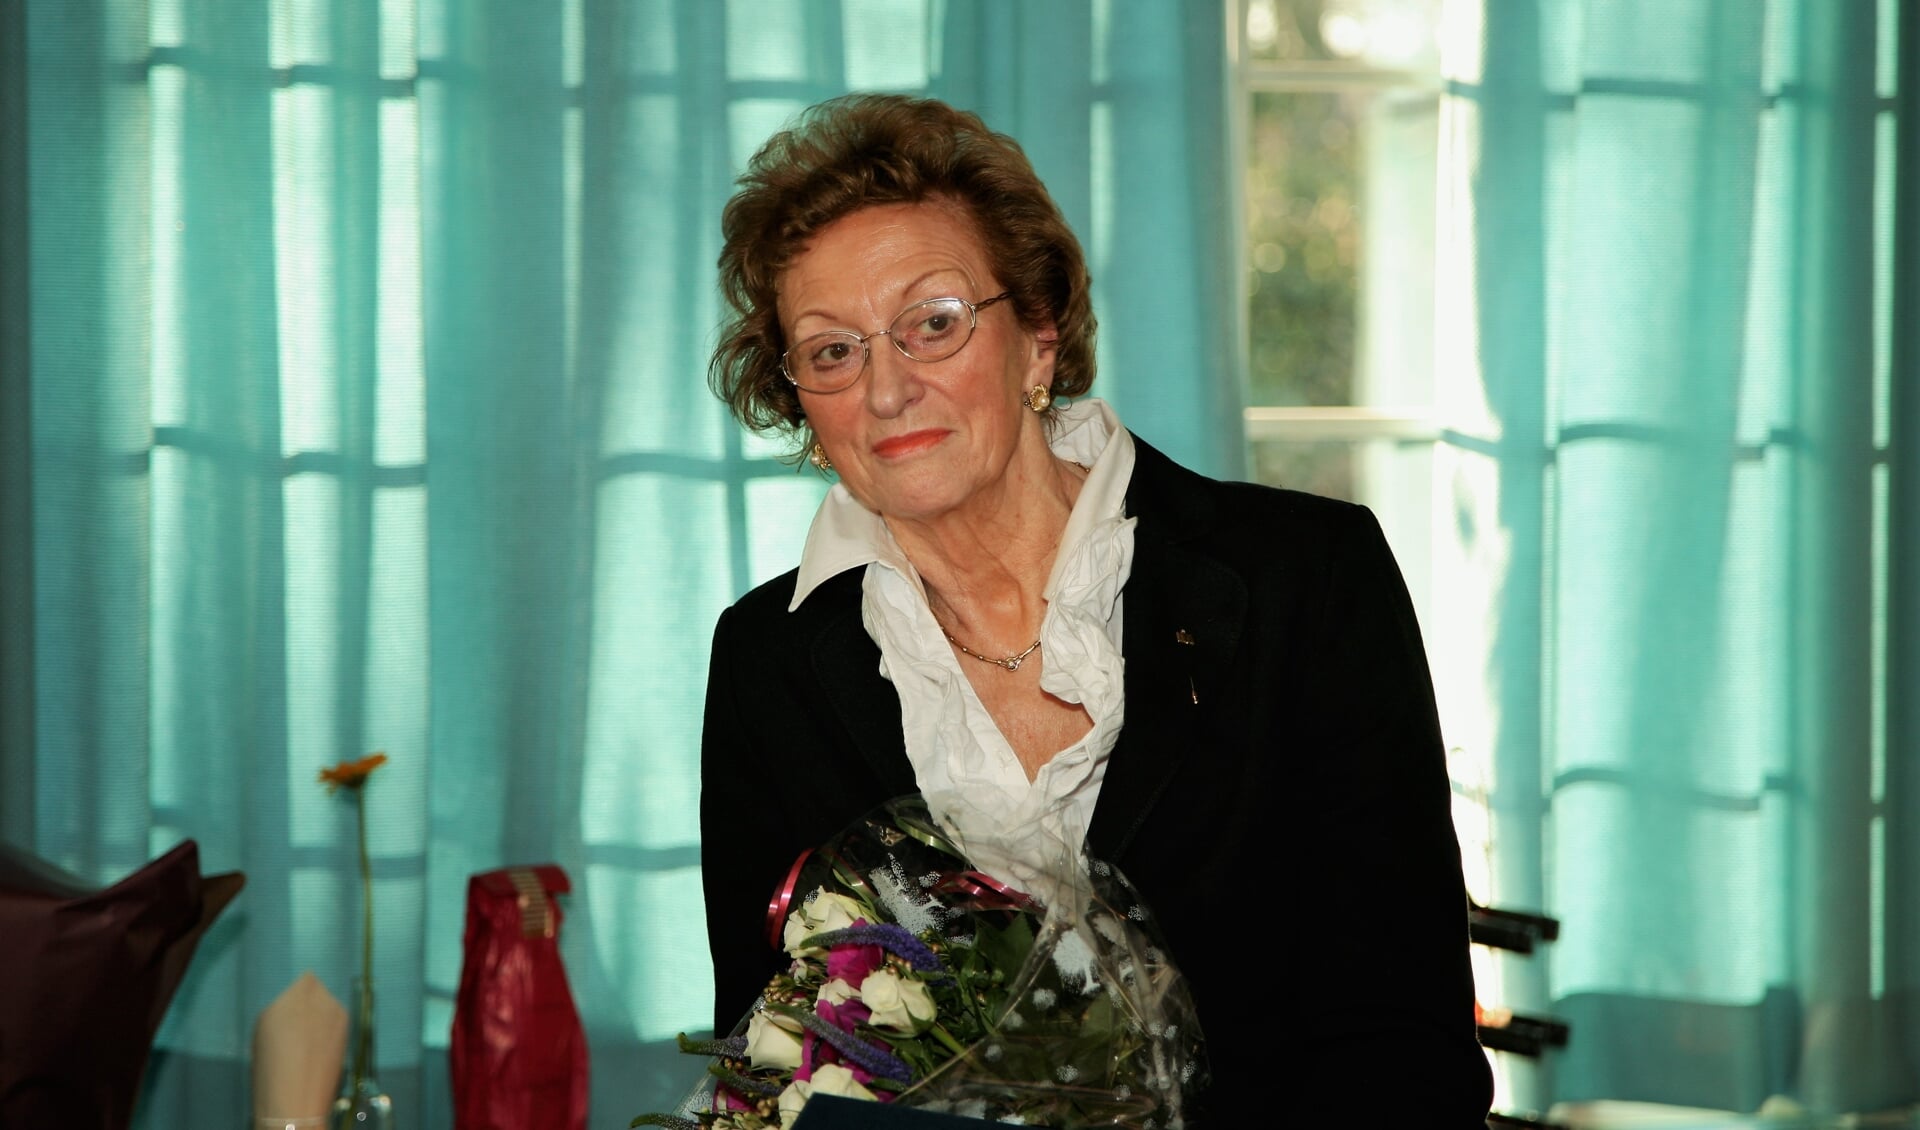 Wil Rozelaar bij haar afscheid van de Rijnlandse Boekhandel in 2007. | Archieffoto Wil van Elk